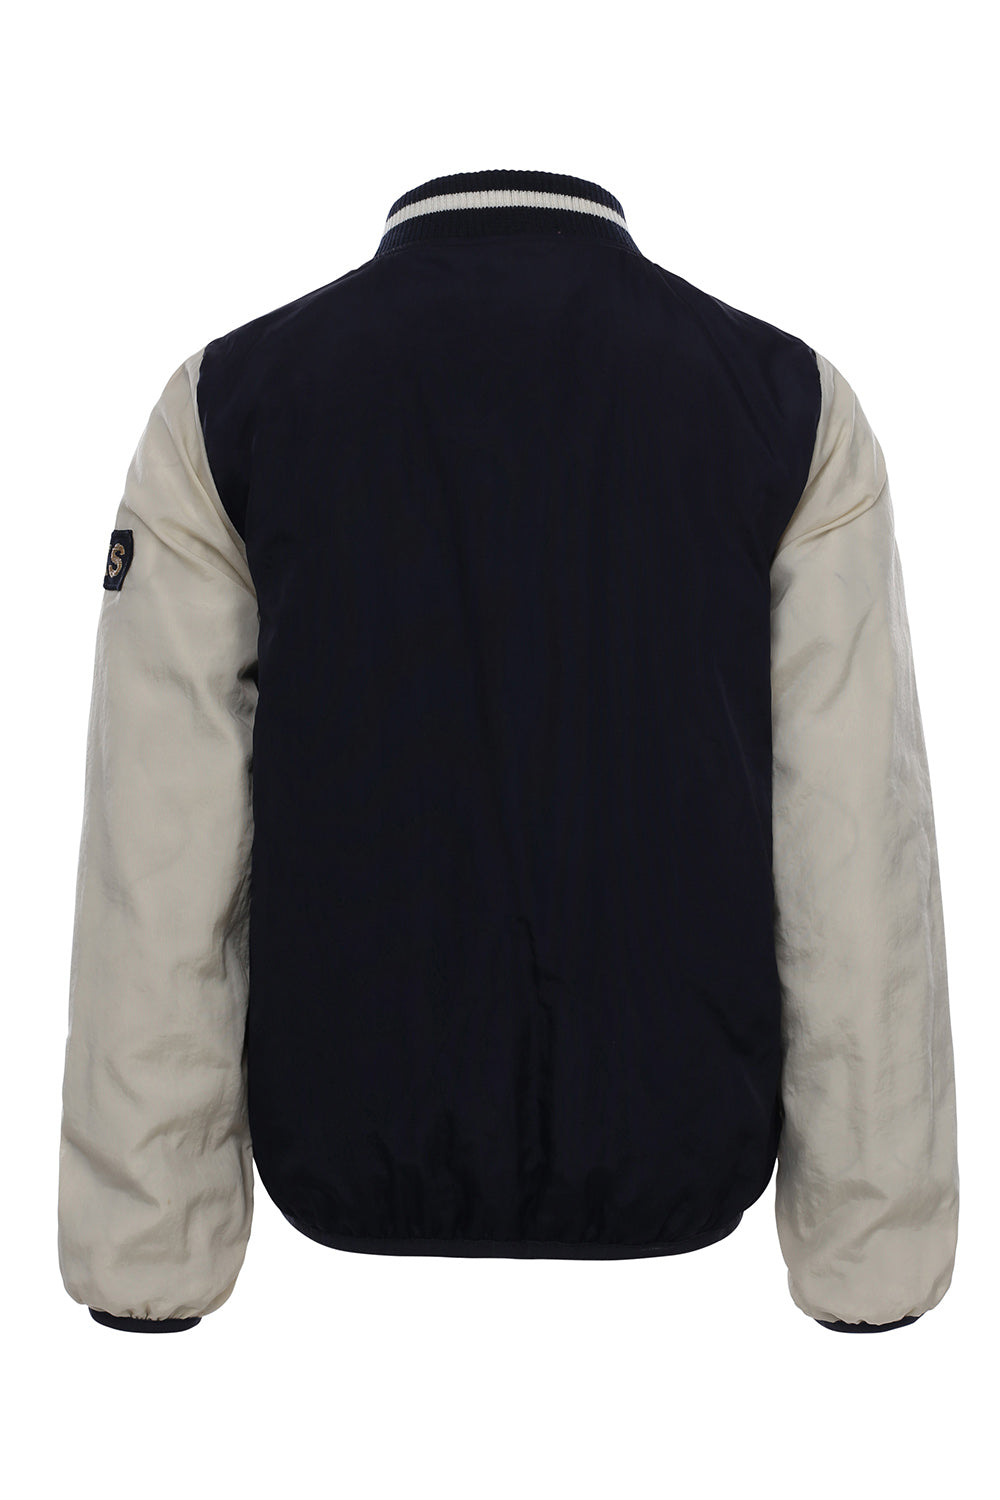 Meisjes Reversible Outerwear Jacket van LOOXS 10sixteen in de kleur navy in maat 176.